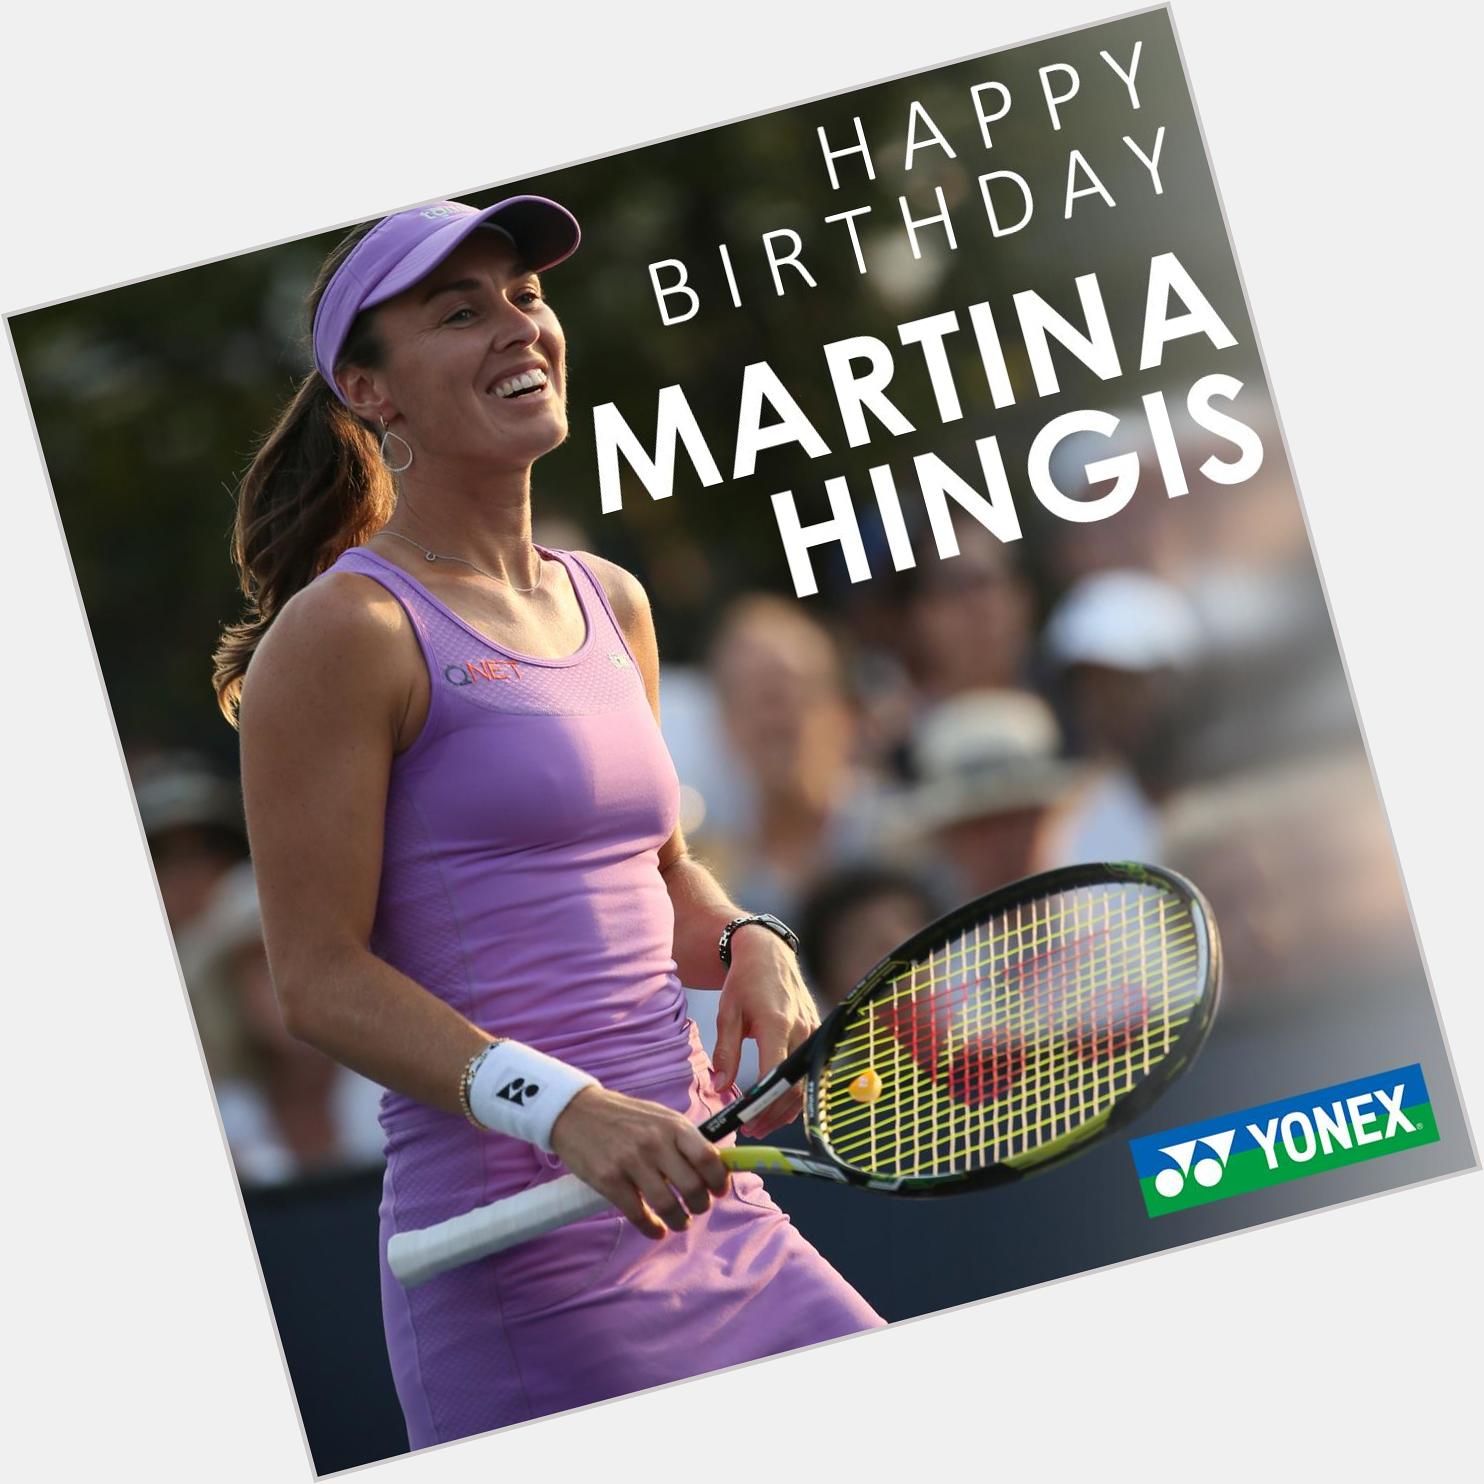 Happy Birthday Martina Hingis!
35  1                                      (     ) 